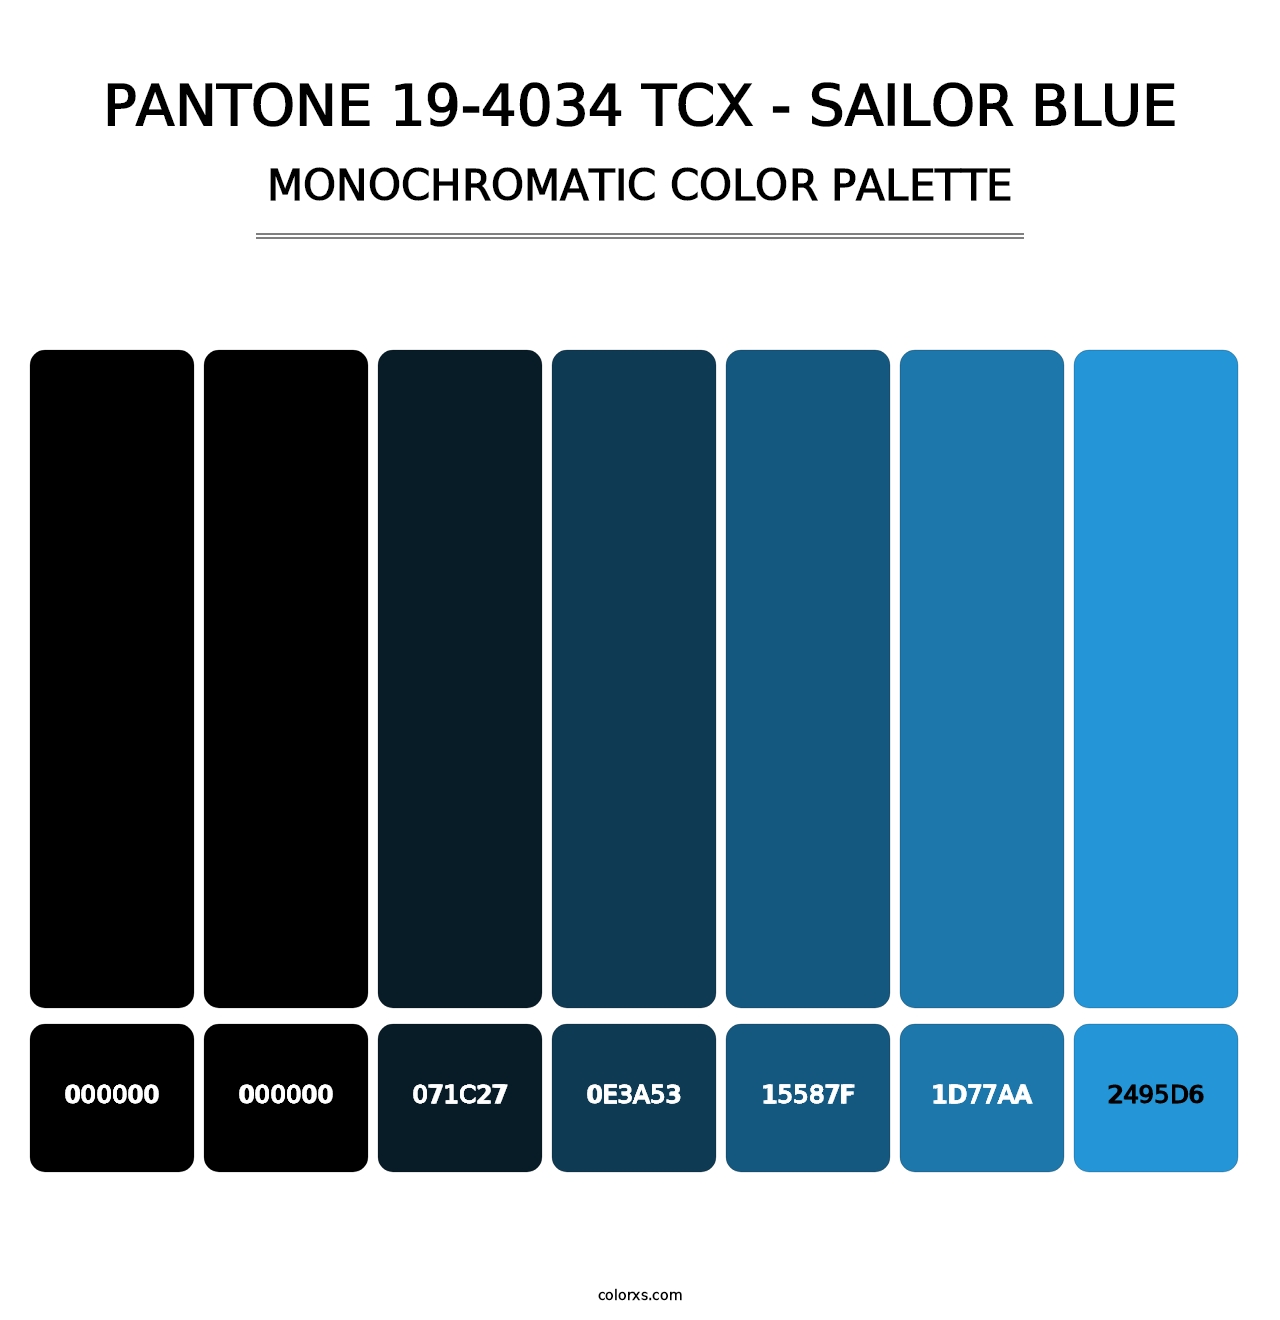 PANTONE 19-4034 TCX - Sailor Blue - Monochromatic Color Palette